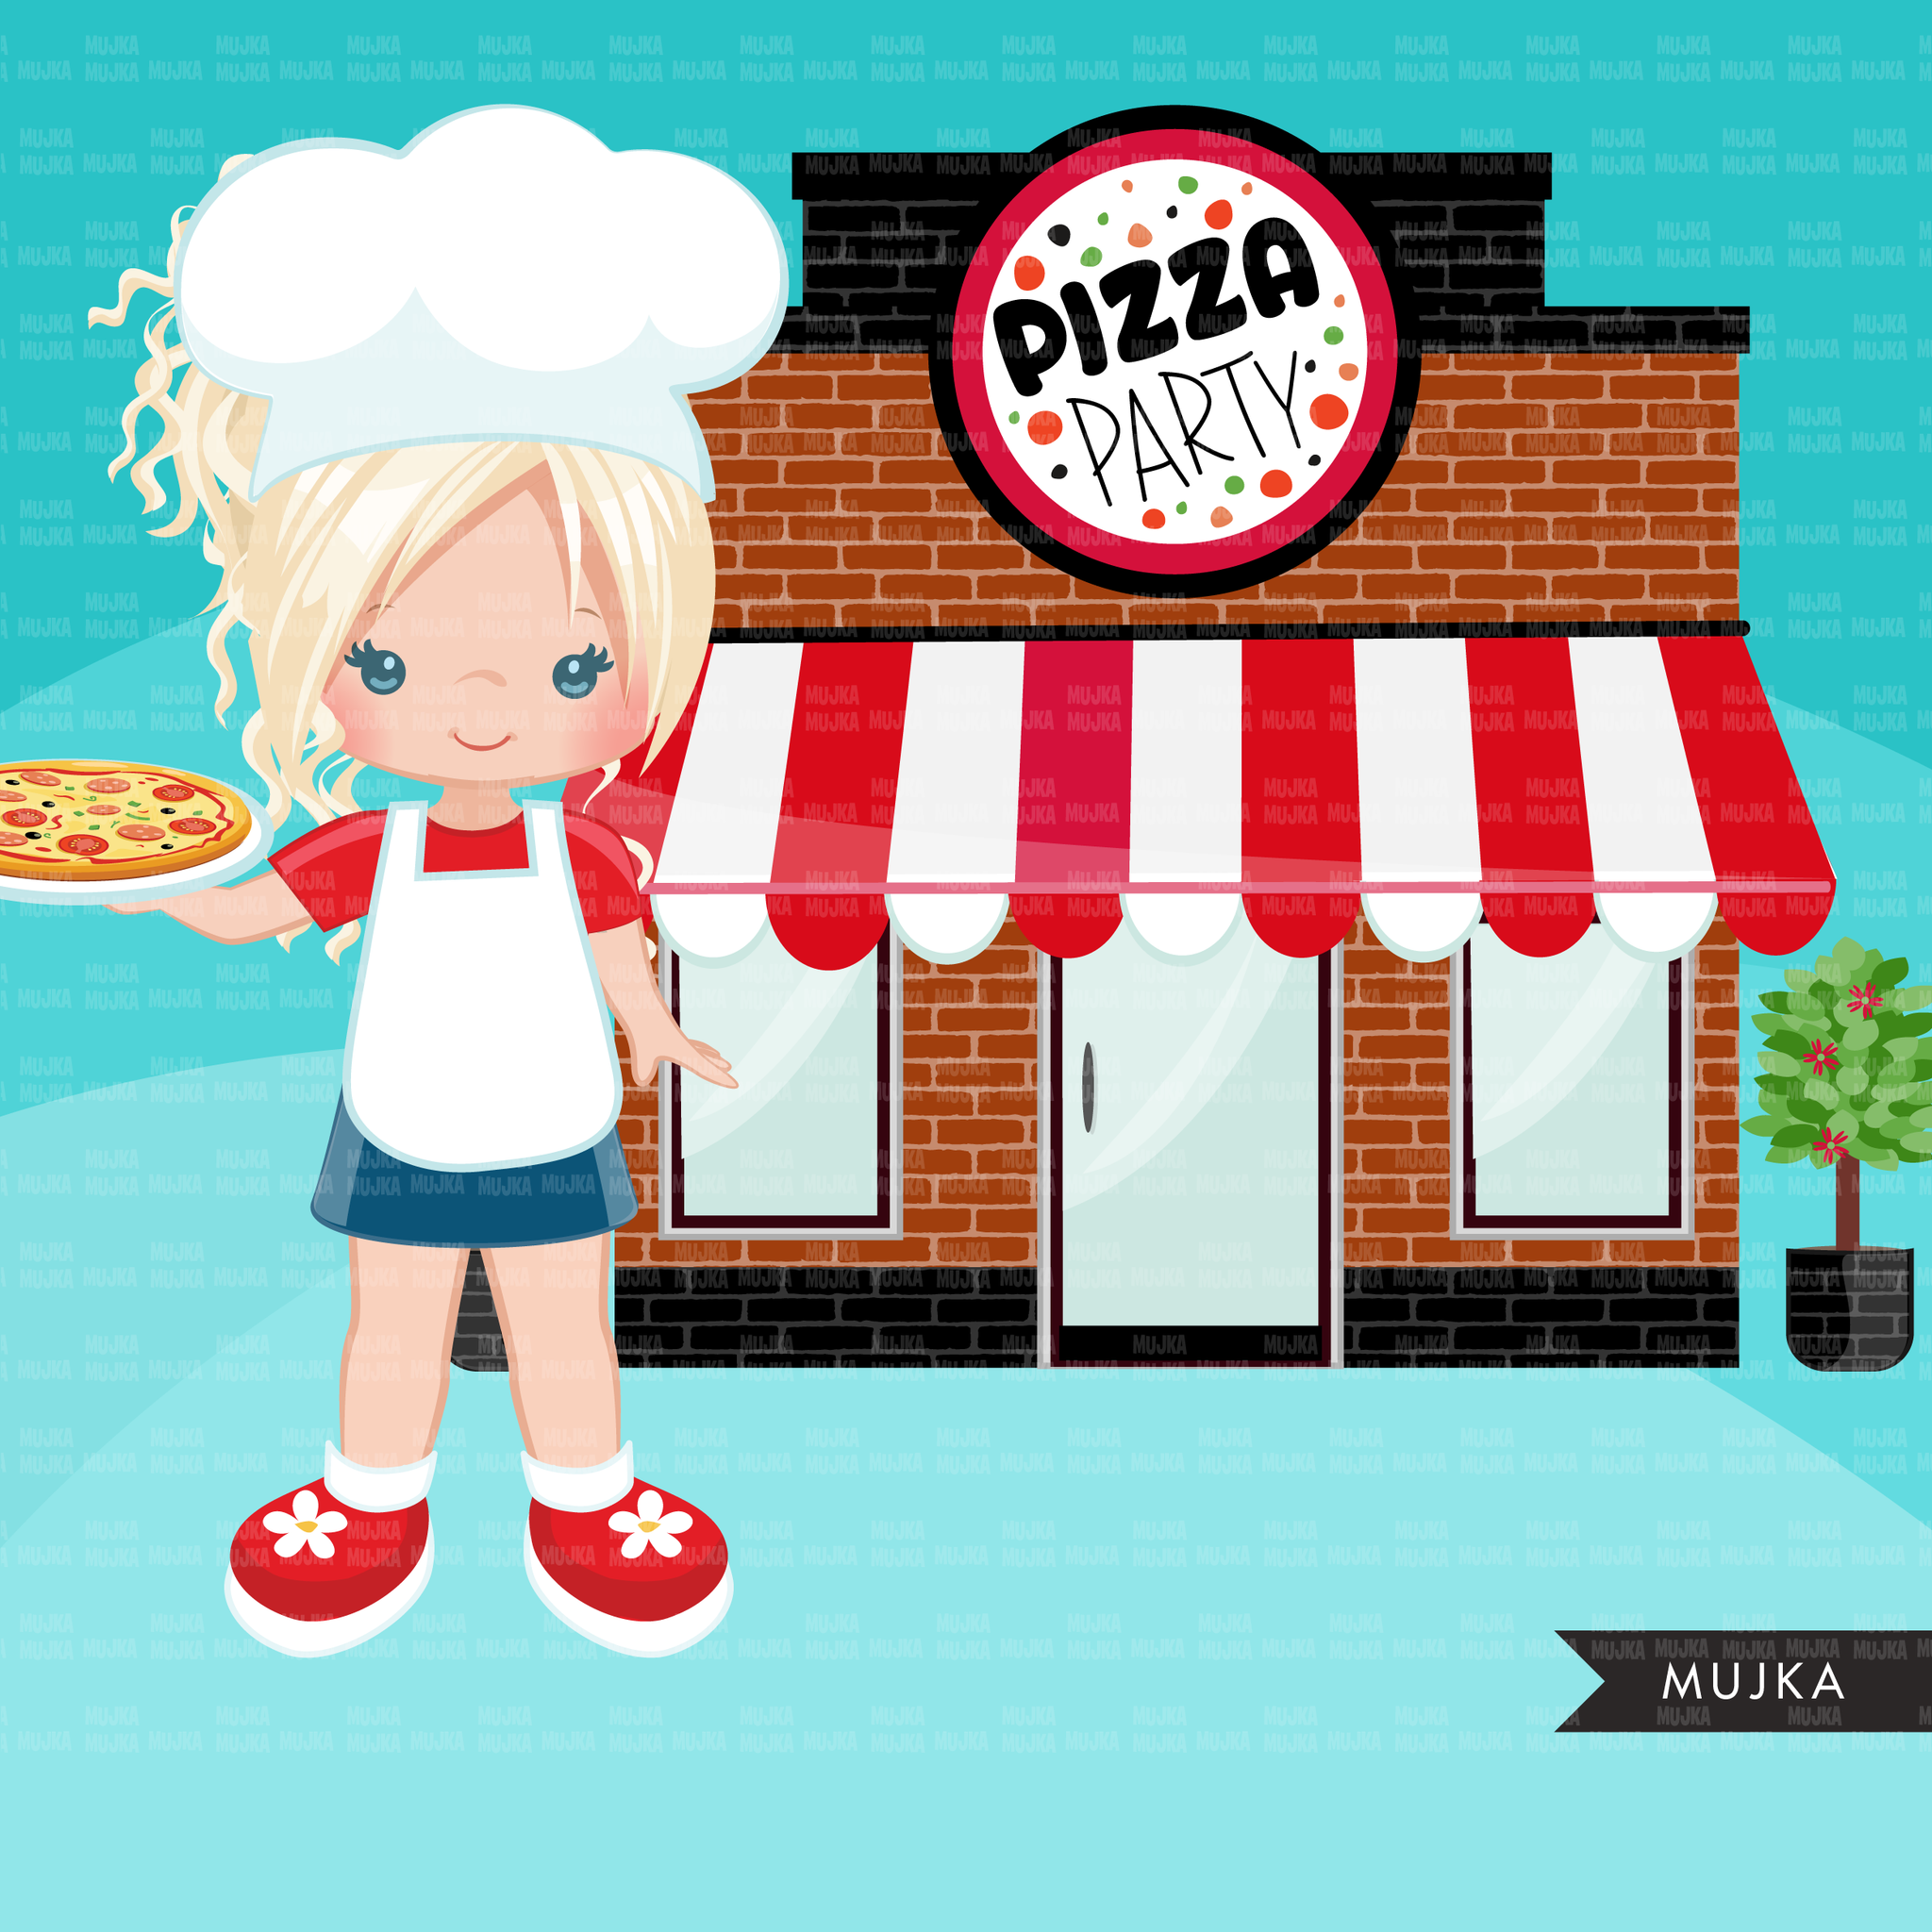 Paquete de imágenes prediseñadas de pizza, chef de pizza, diseños de sublimación de paquetes de pizzería descarga digital, cumpleaños de pizza png, niños de pizza, niño y niña negros